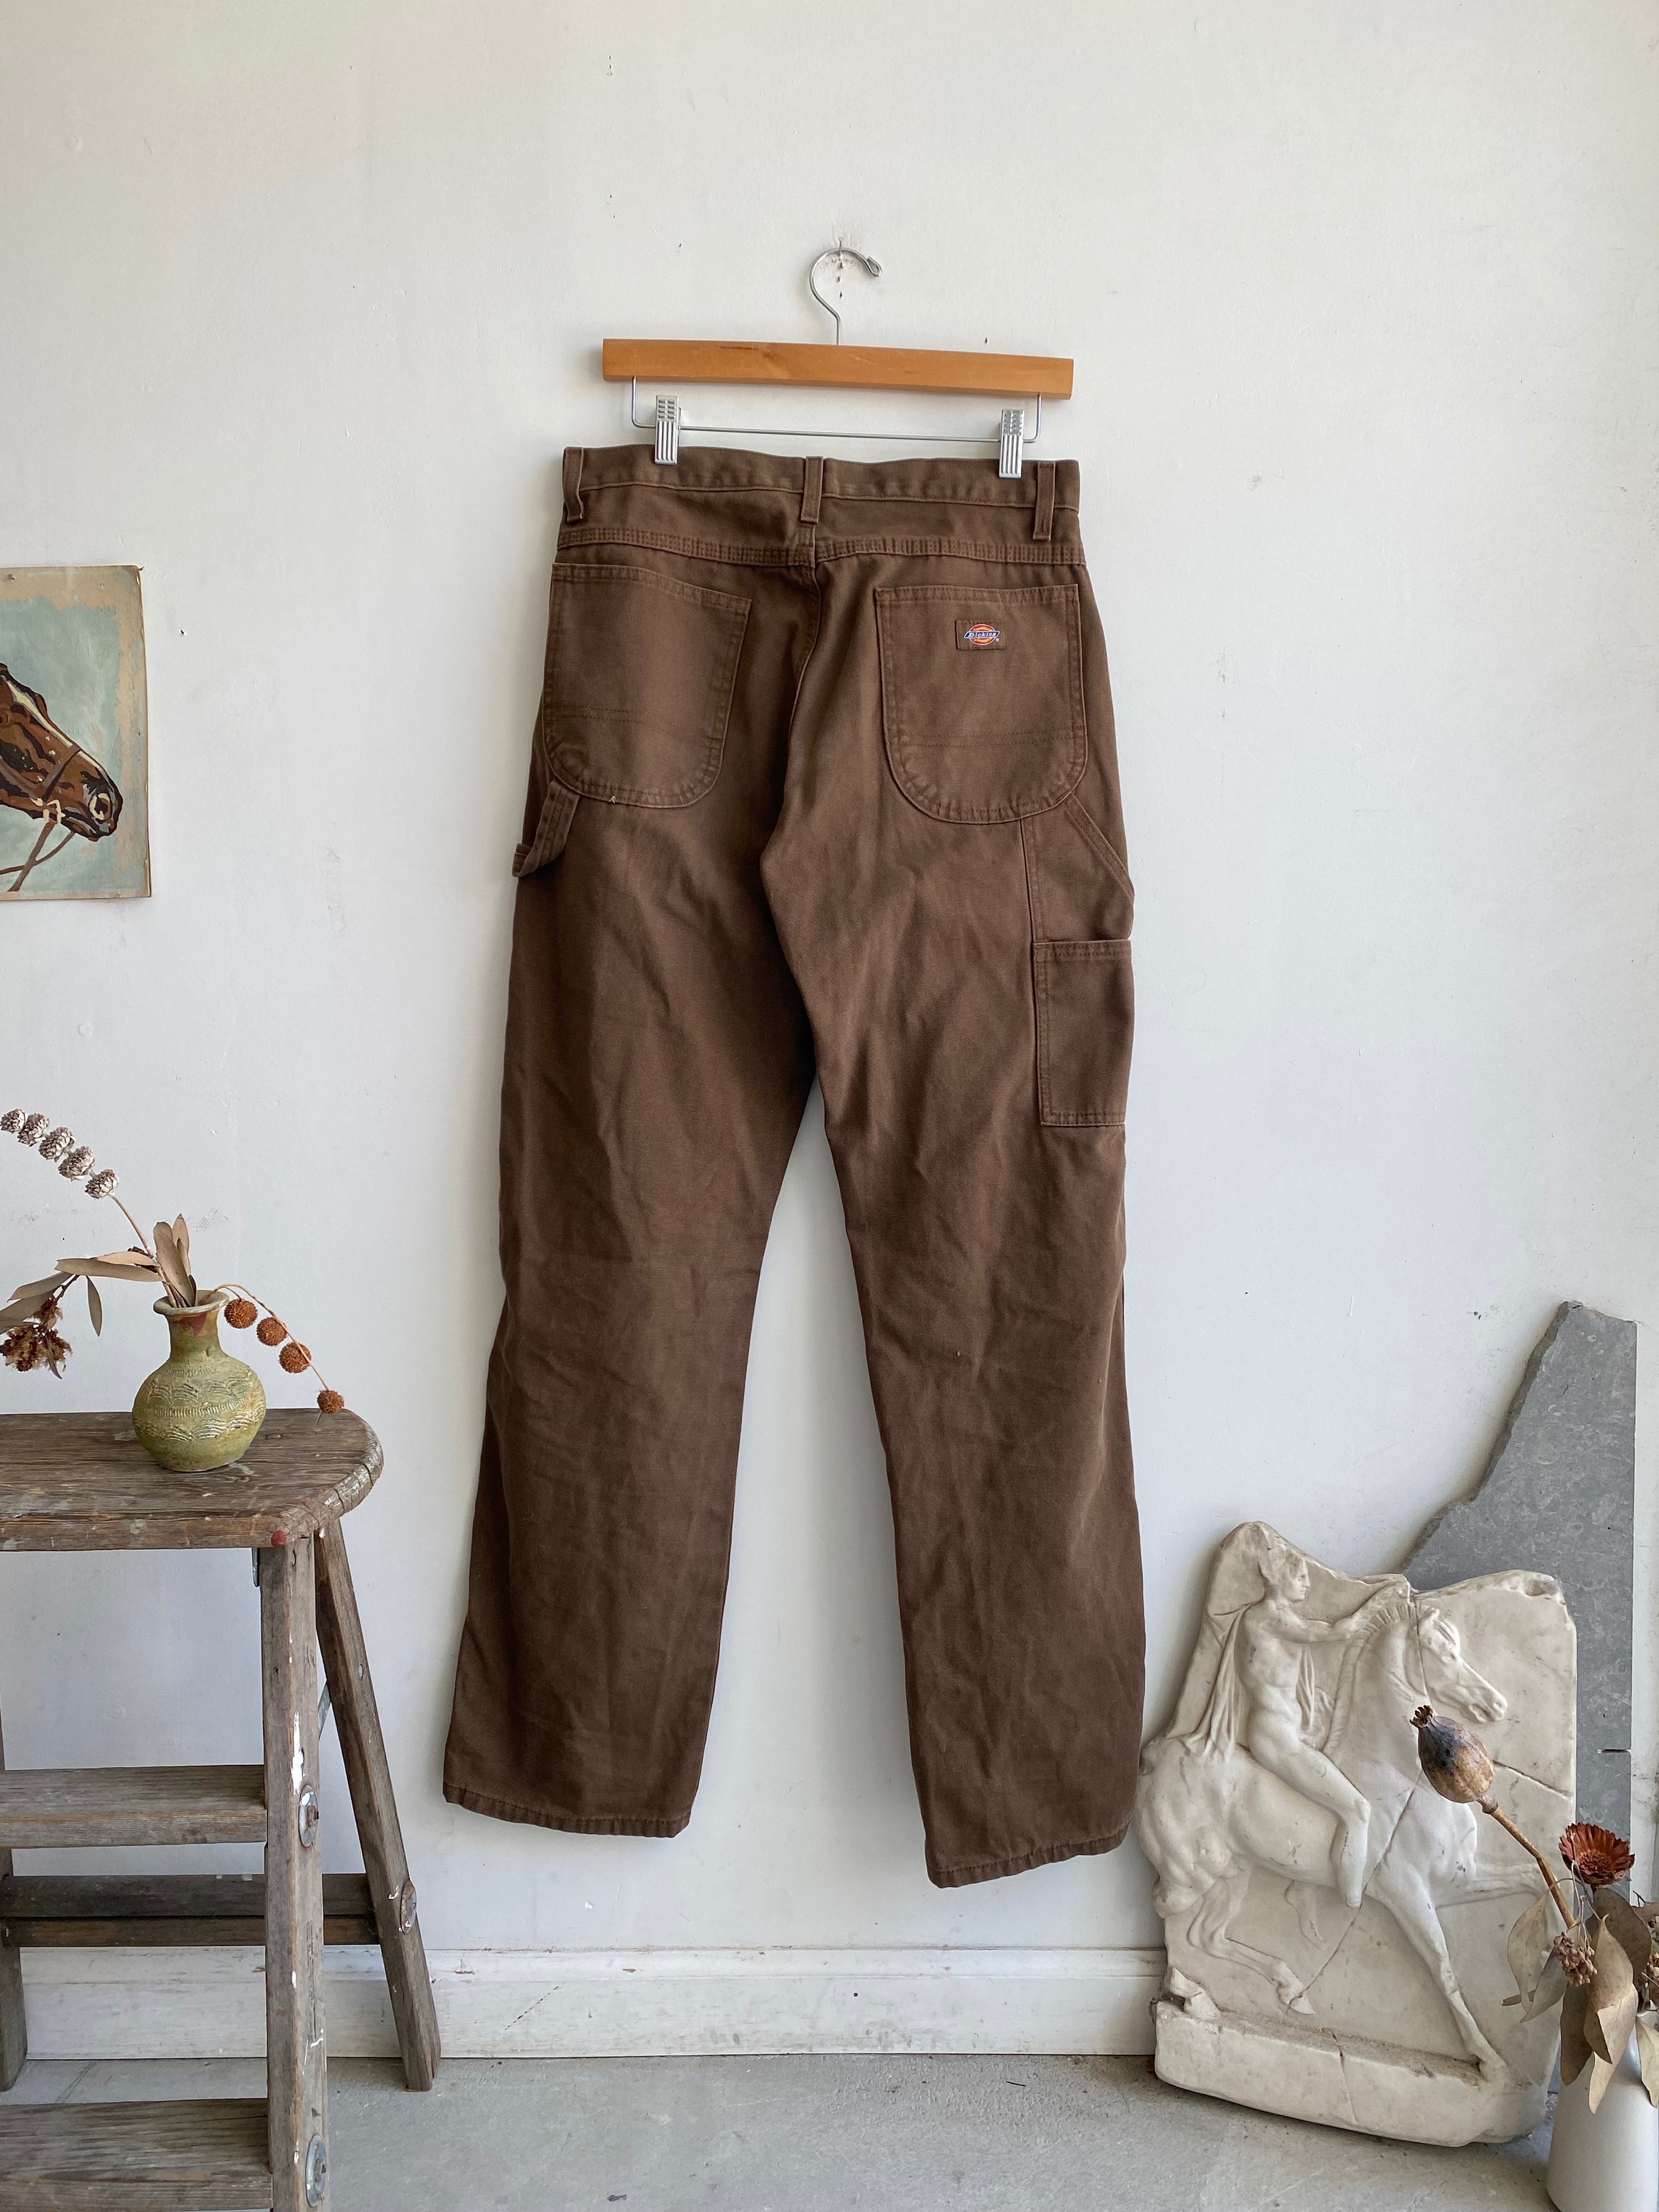 1990s Brown Dickies Work Pants (31 x 32)